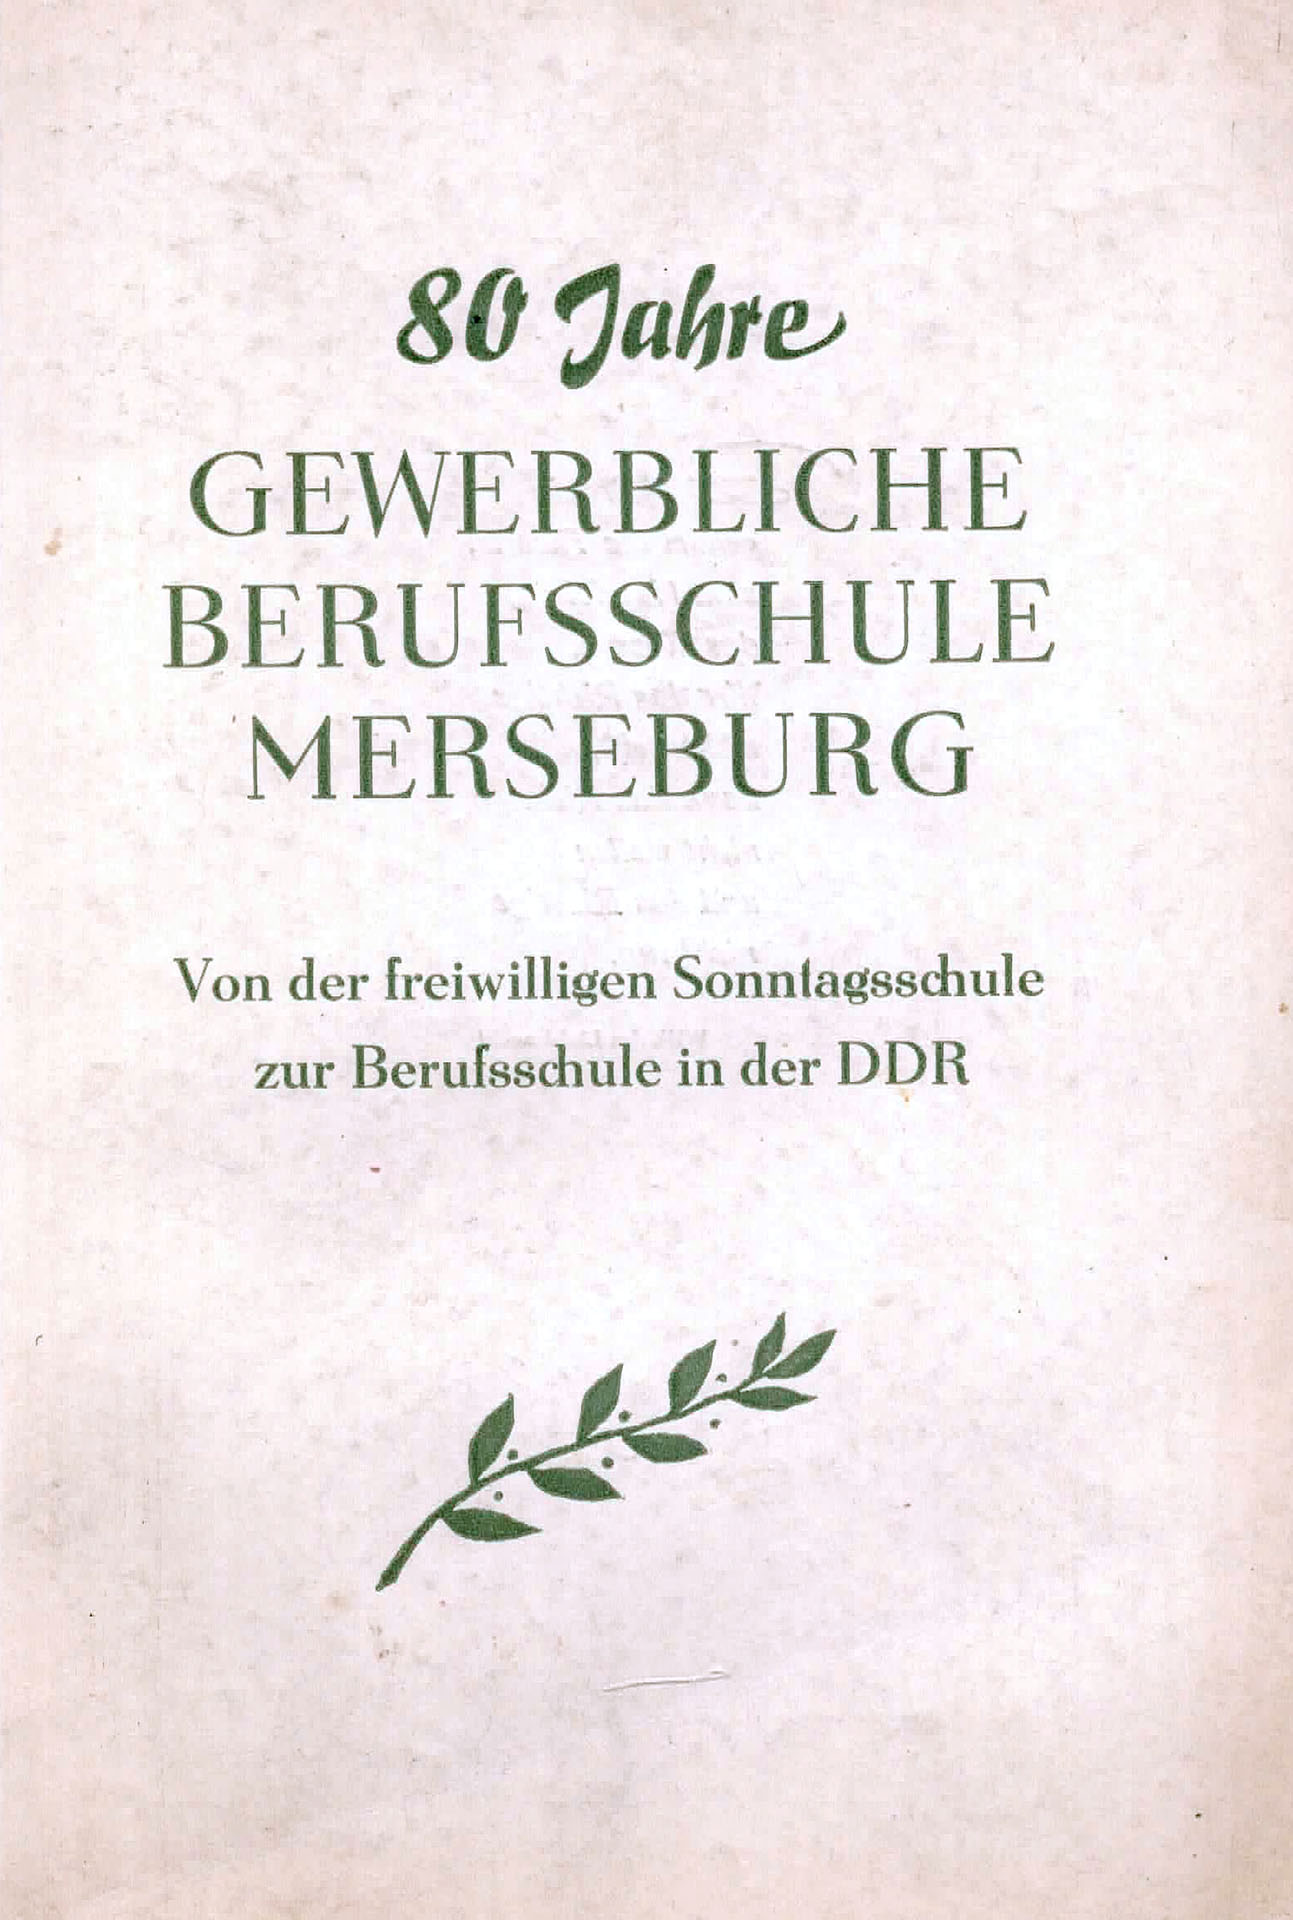 80 Jahre gewerbliche Berufsschule Merseburg - Gentzel, Harald